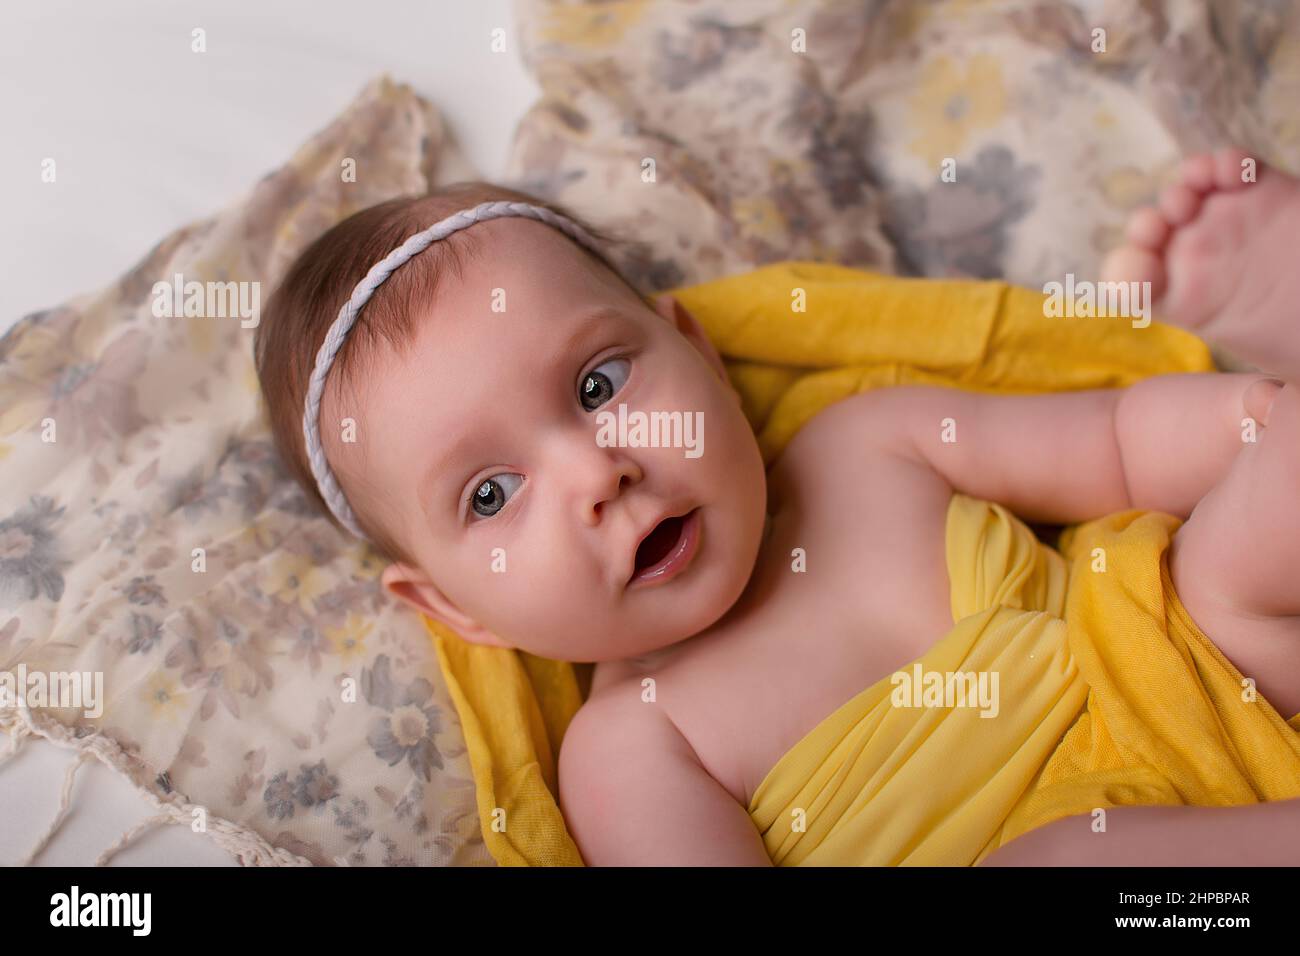 matiz Anormal graduado un bebé recién nacido con ropa amarilla, fondo gris, está sobre su espalda.  Feliz infancia, con estilo para recién nacidos y niños Fotografía de stock  - Alamy